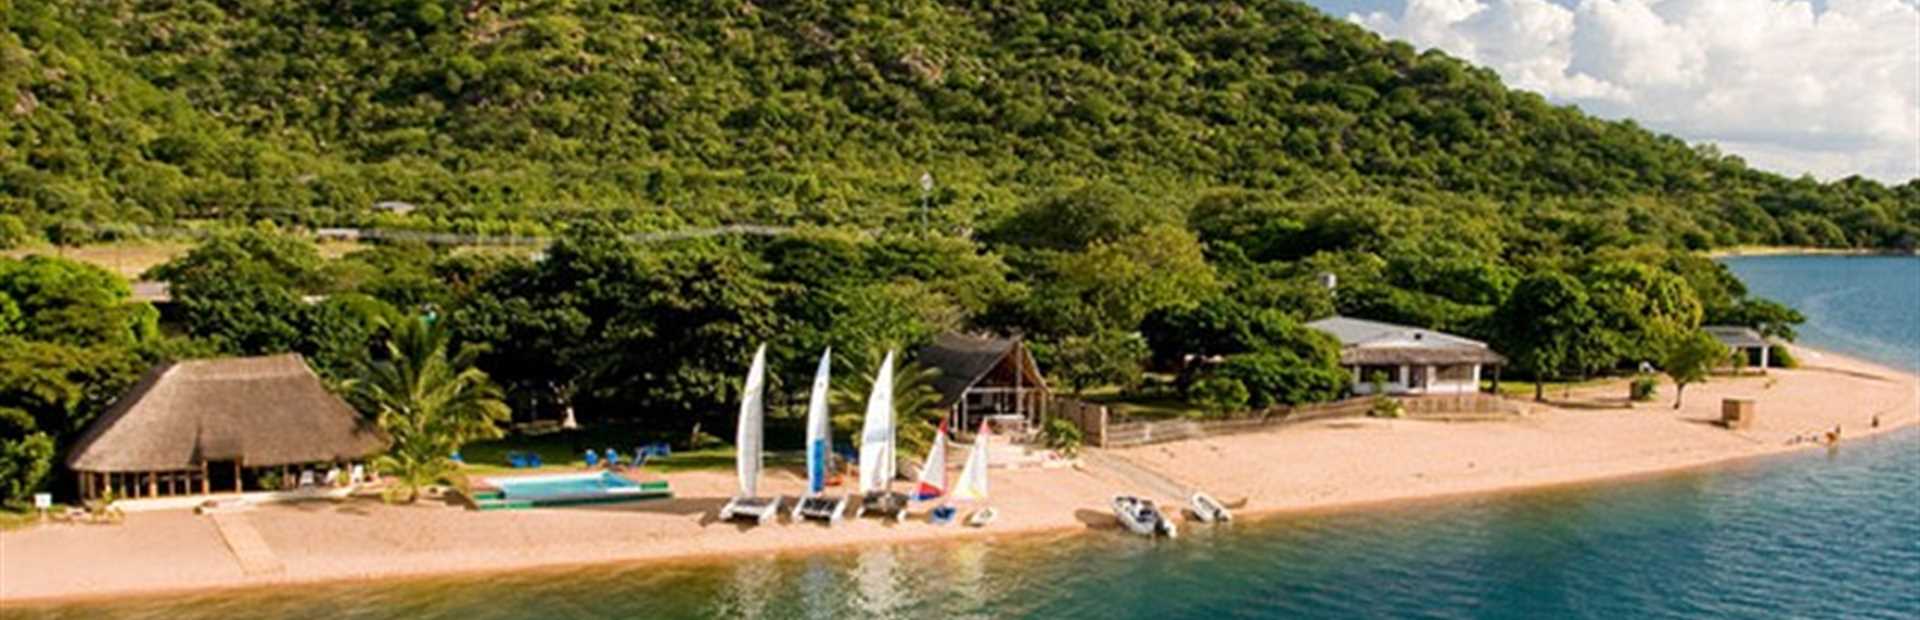 Danforth Yachting Lodge